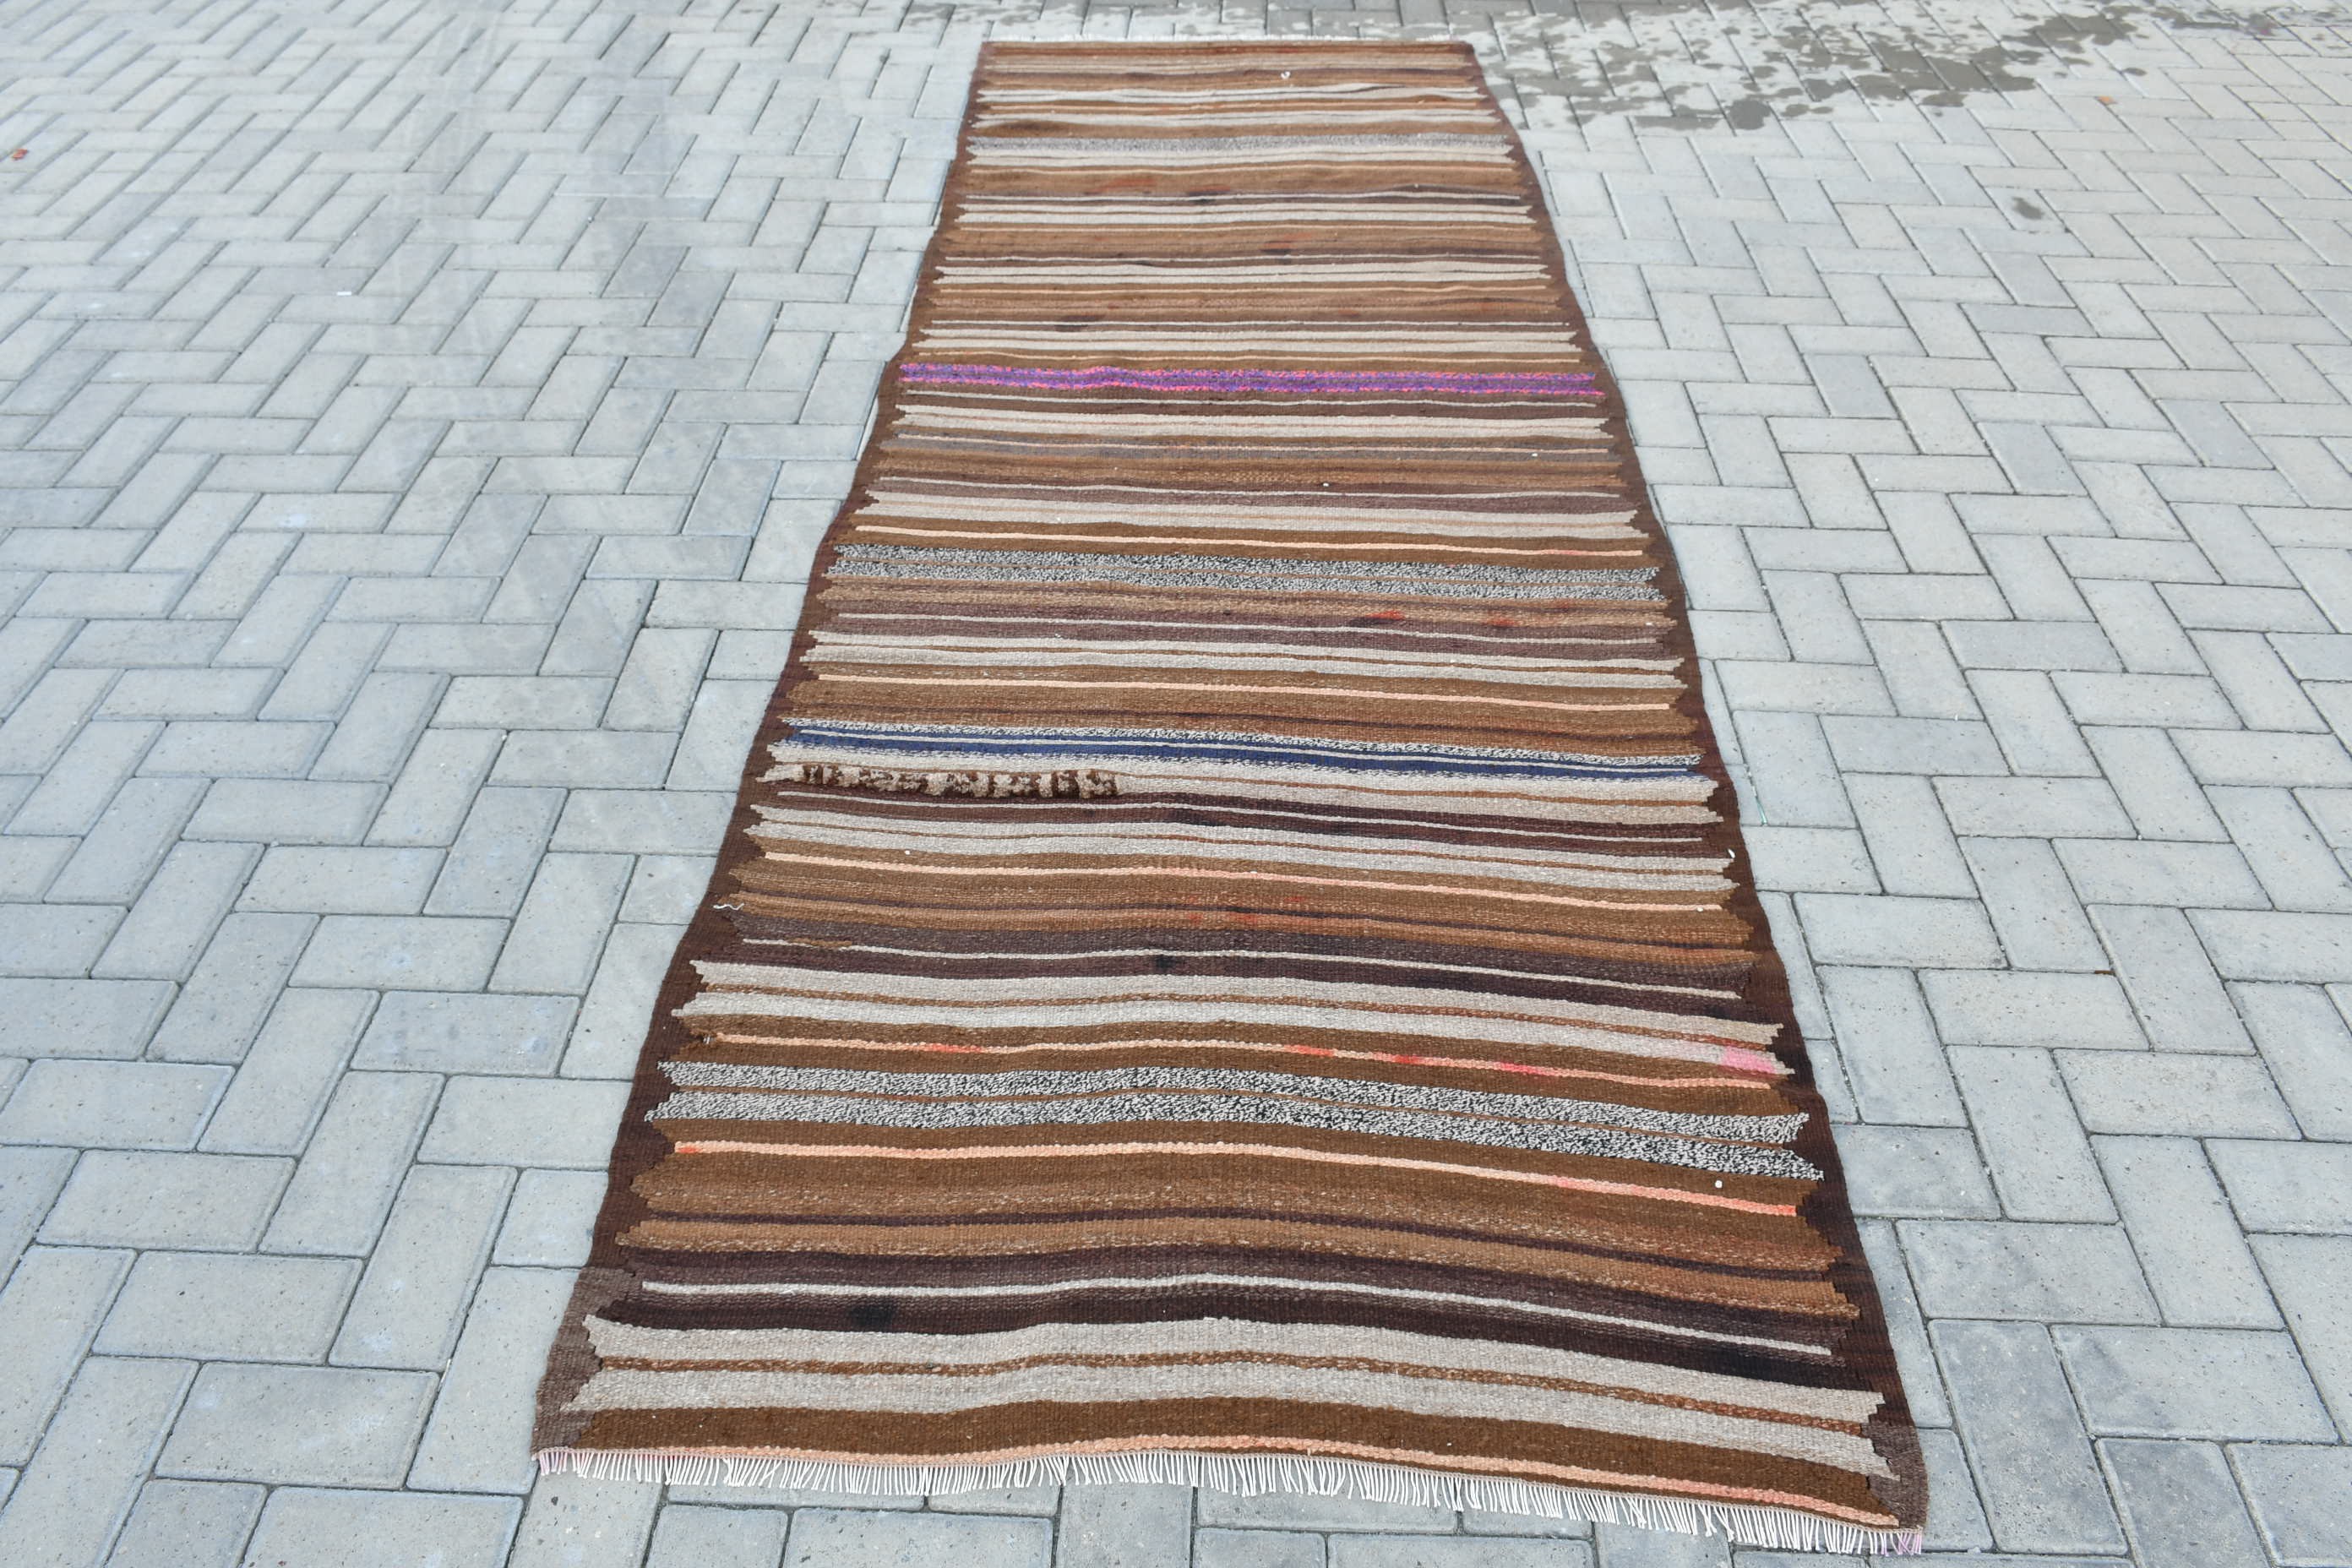 Anatolian Rugs, Oushak Rug, Brown Wool Rug, Kilim, Stair Rug, Turkish Rug, Vintage Rug, Art Rug, Rugs for Corridor, 3.6x10.8 ft Runner Rugs